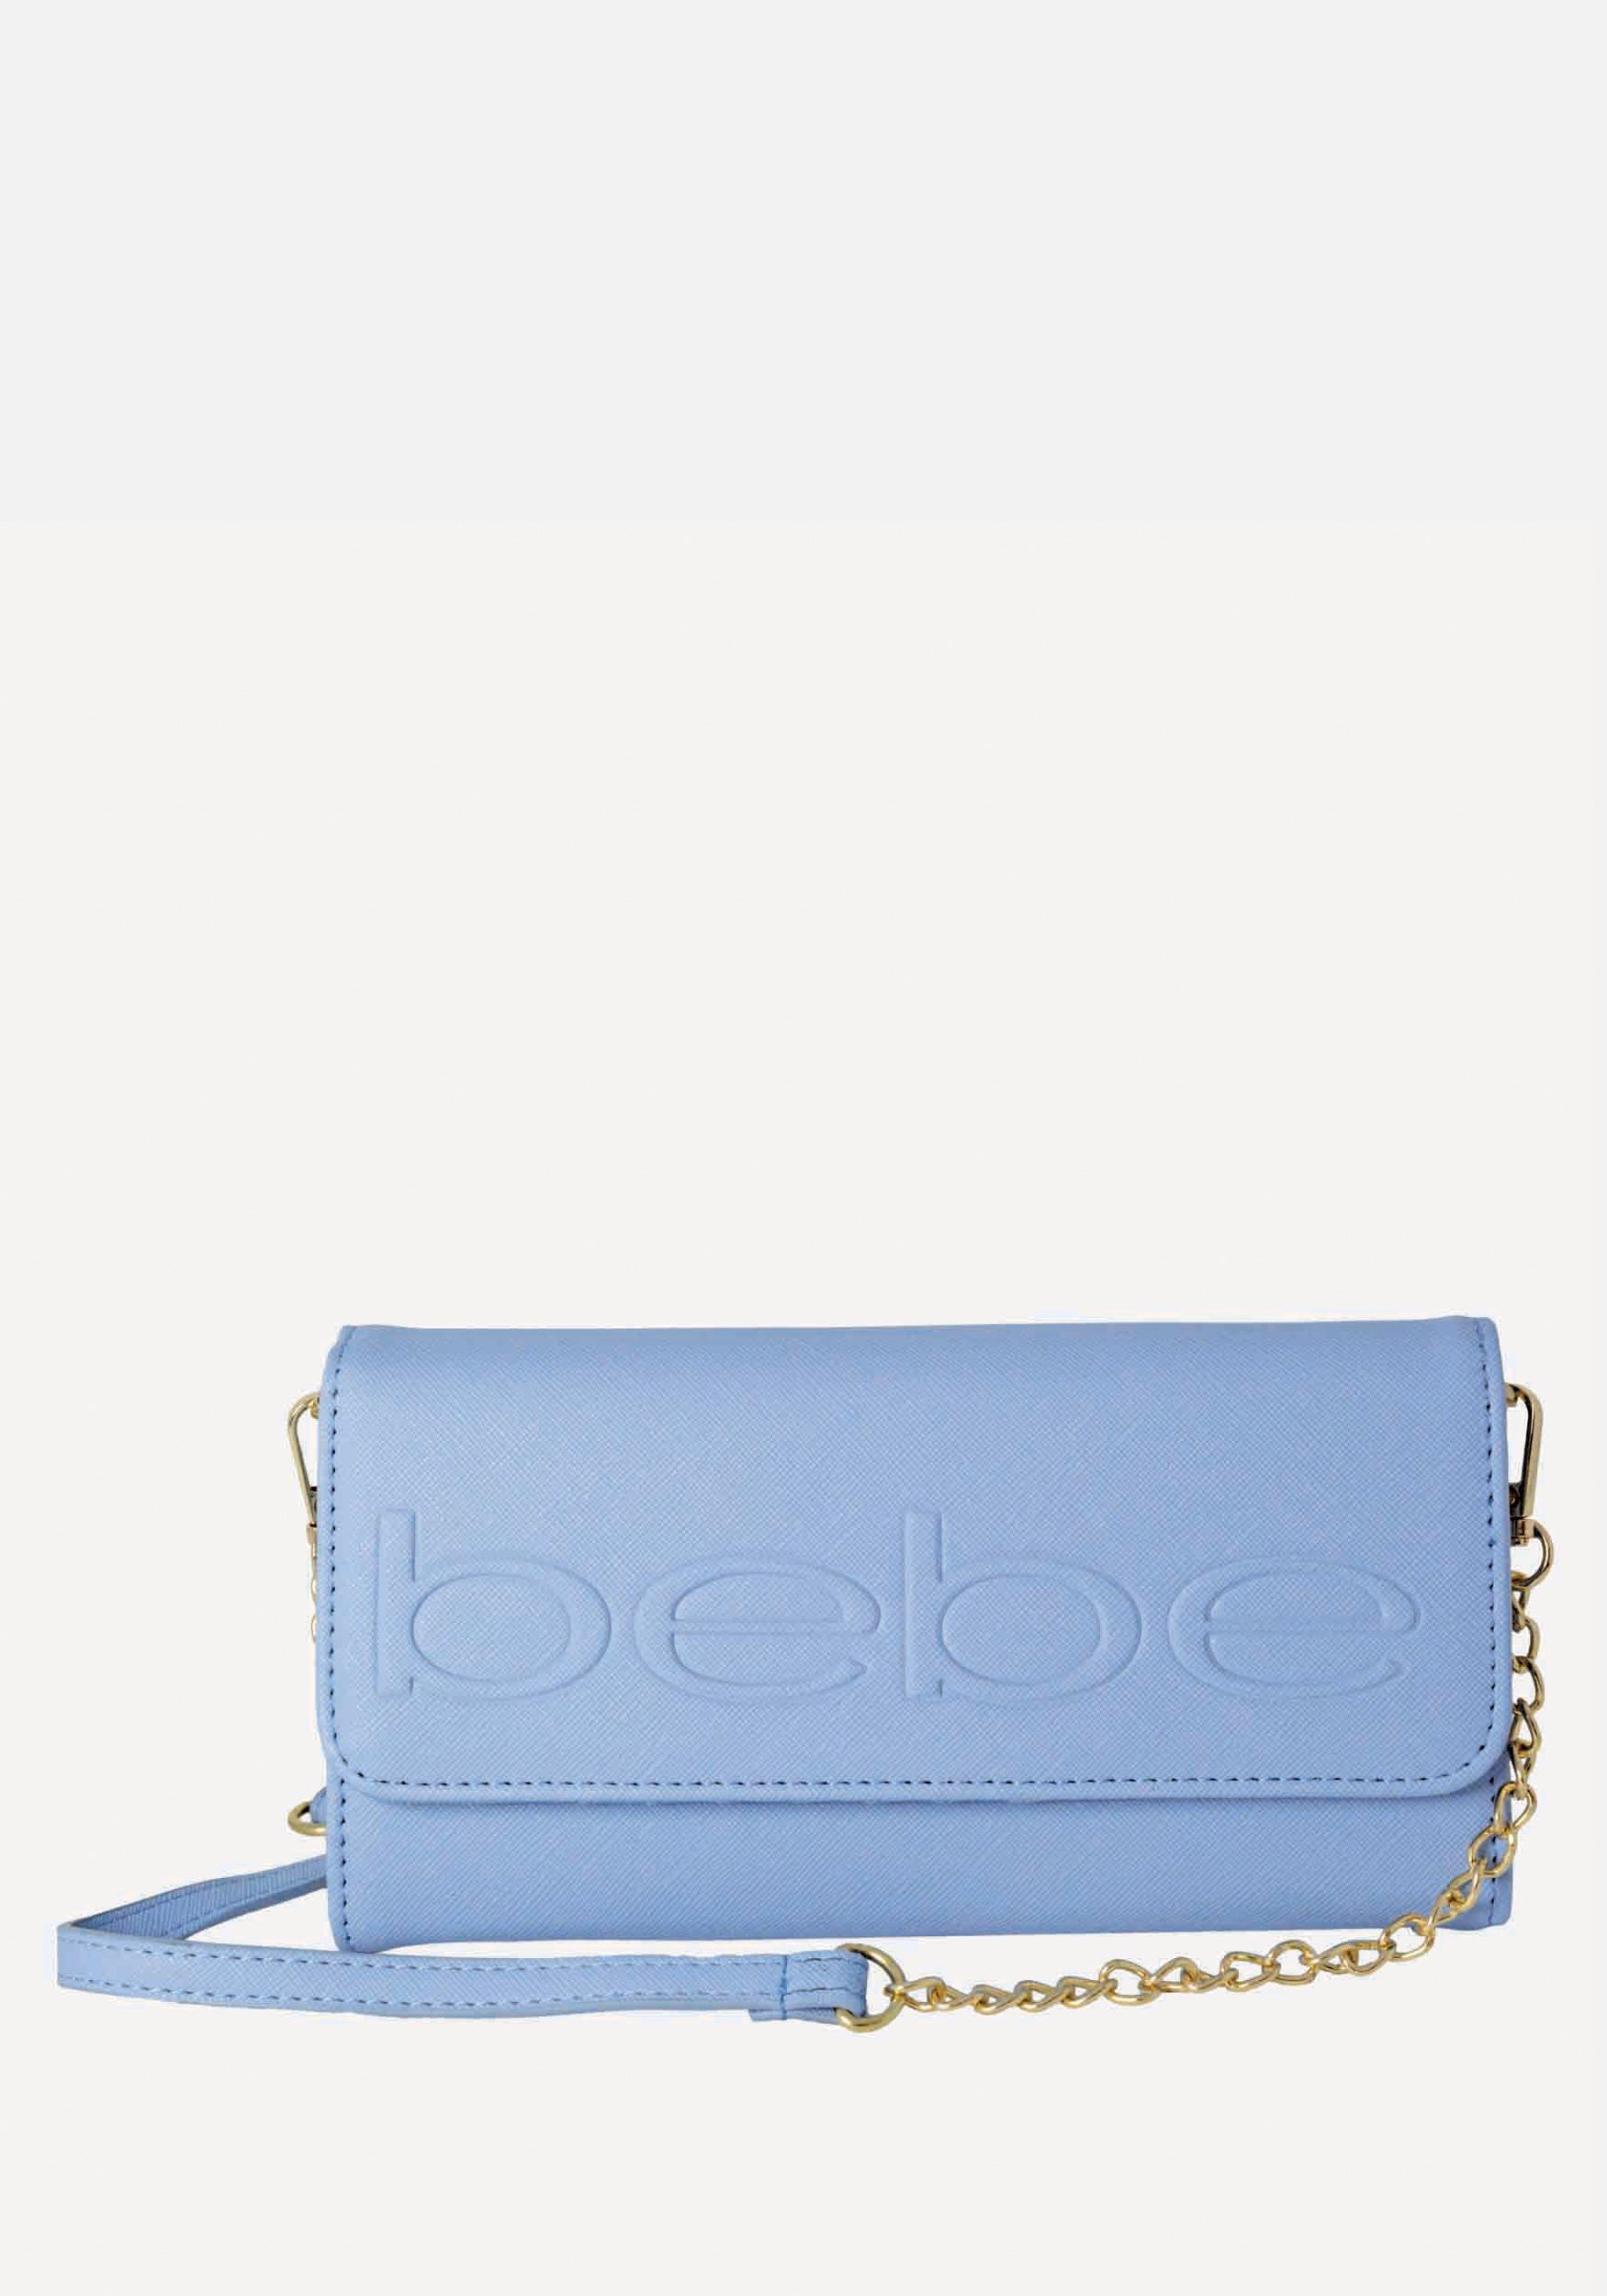 Bebe Women's Lila Phone Wallet Crossbody in Blue Polyester